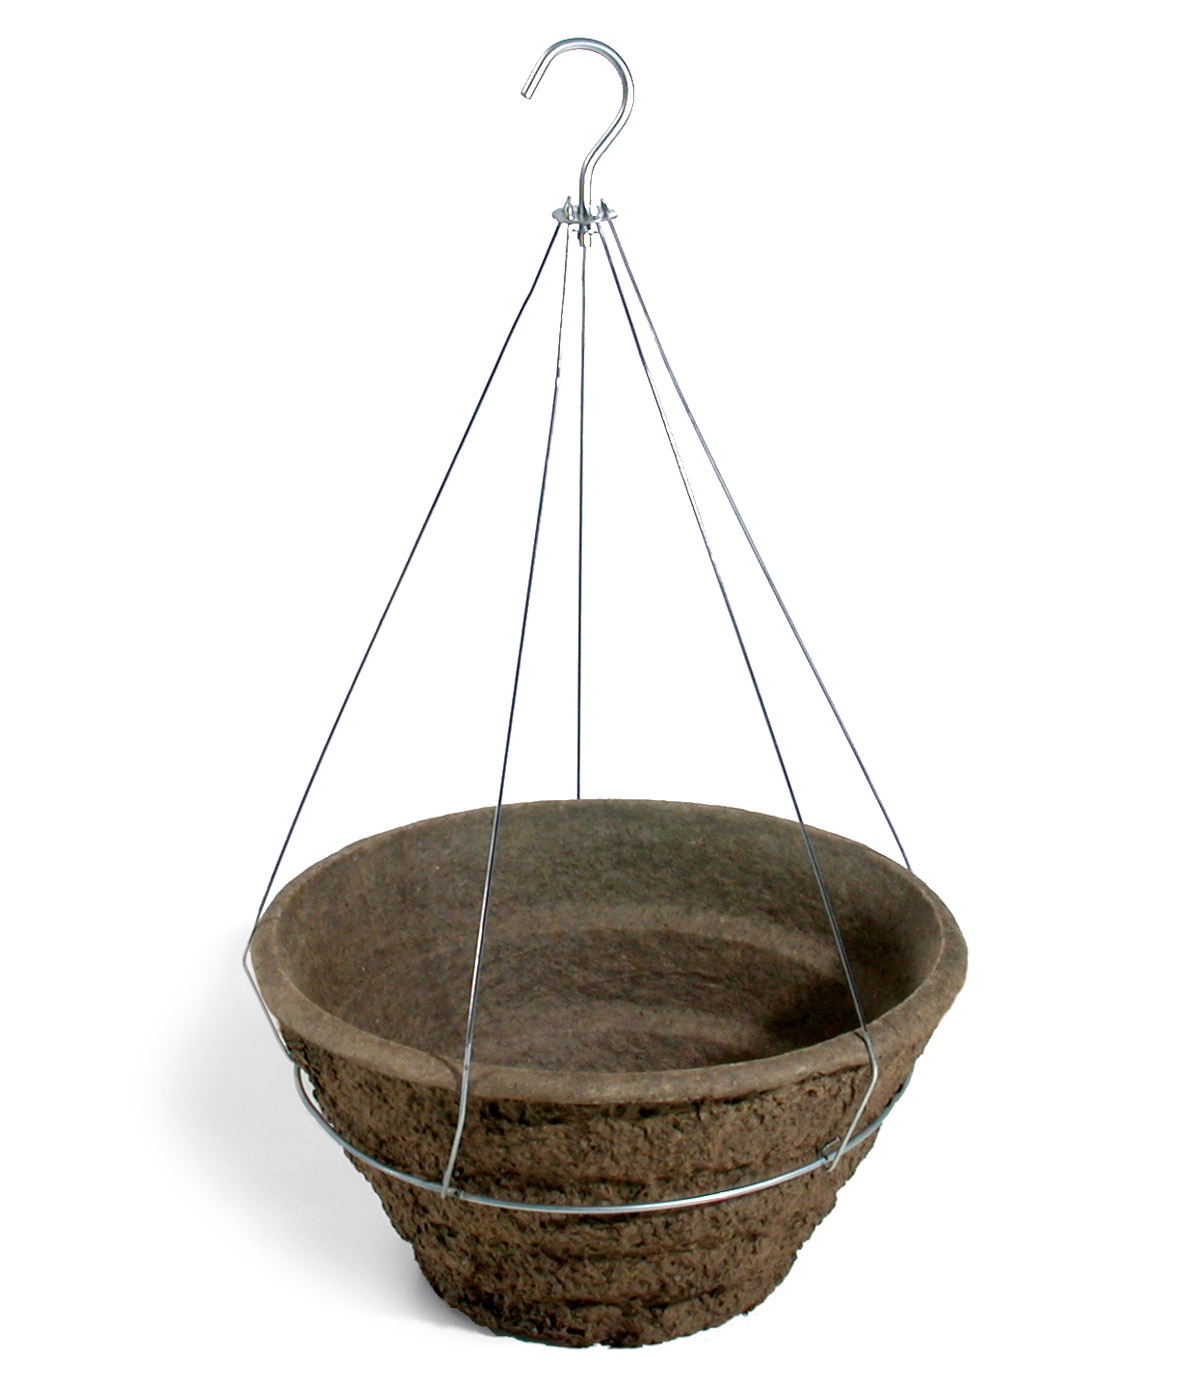 16 Inch Garden Basket - 20 per case - Hanging Baskets